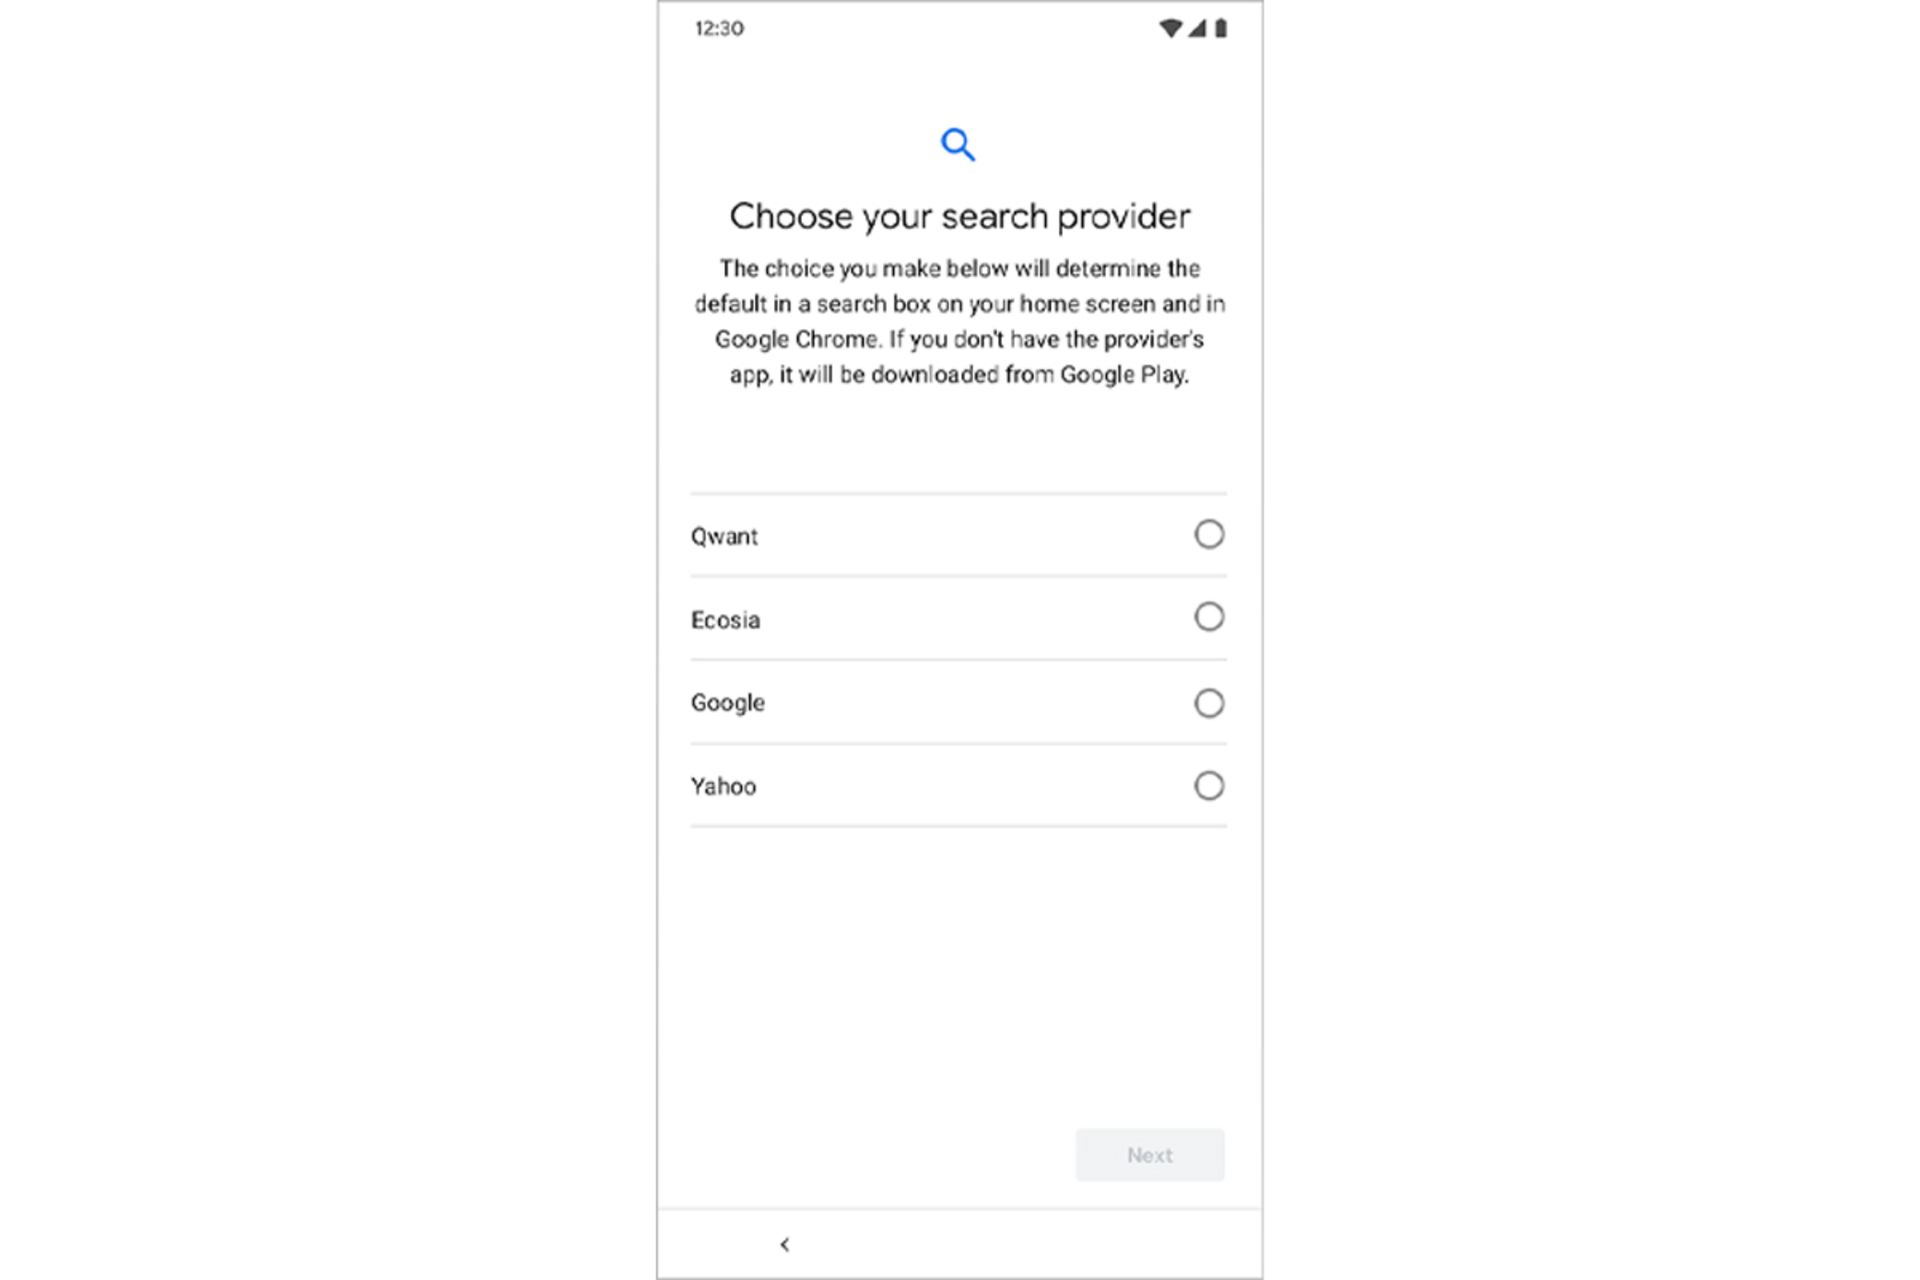 گزینه های موتور جستجو در گوشی اندروید / Android Phone اروپا